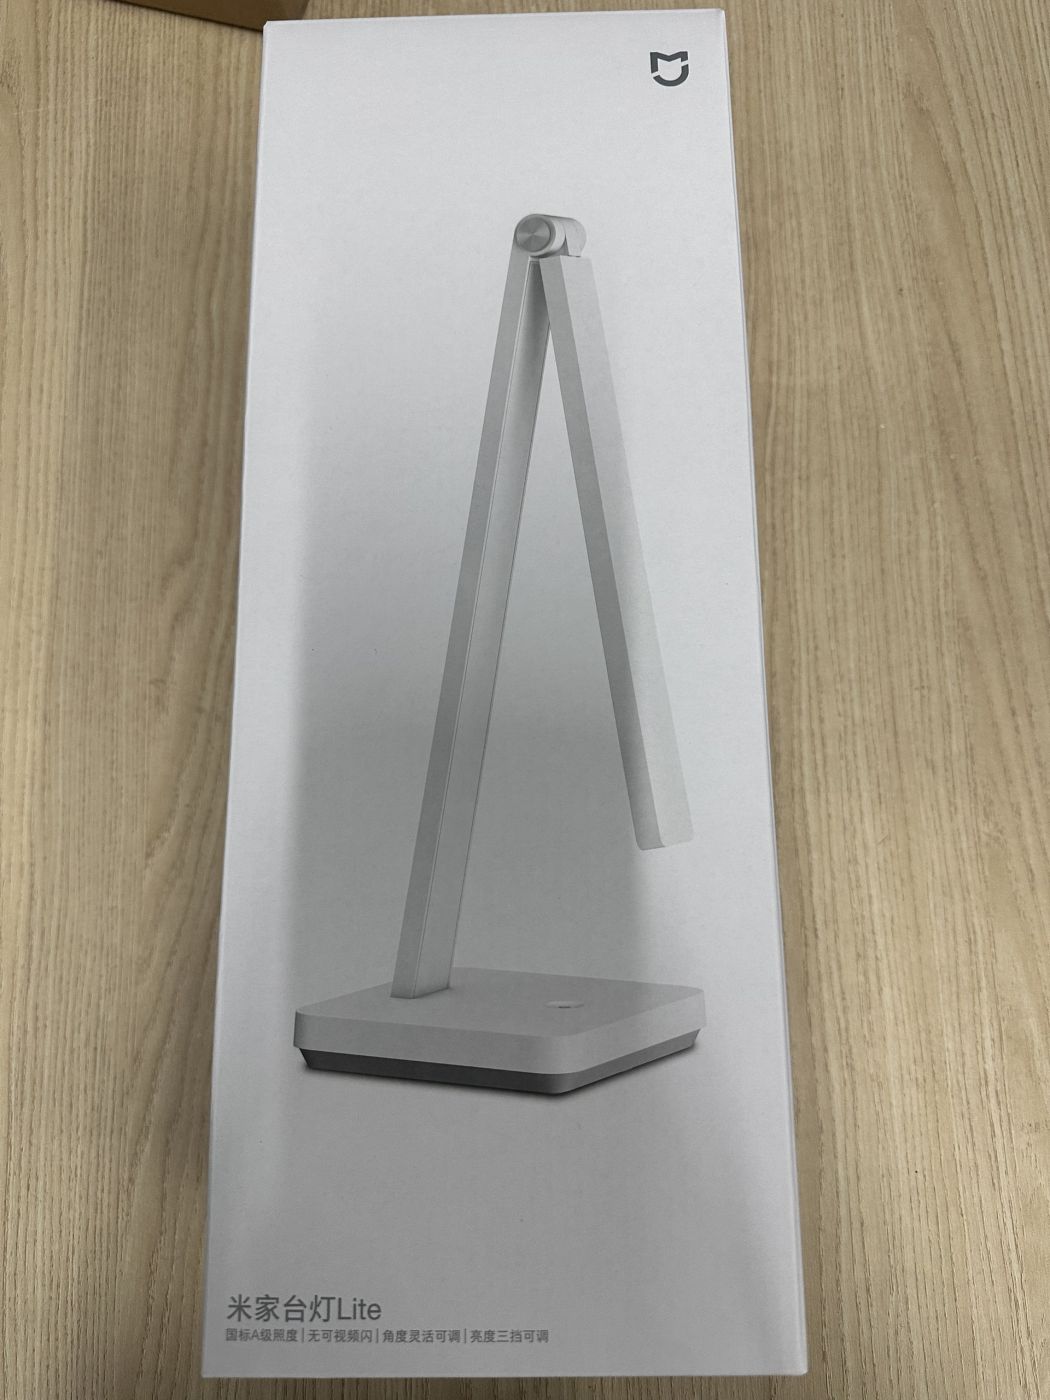 Đèn bàn thông minh Xiaomi Mijia lamp Lite Chống Cận bảo vệ mắt cao cấp - Đèn học chống cận